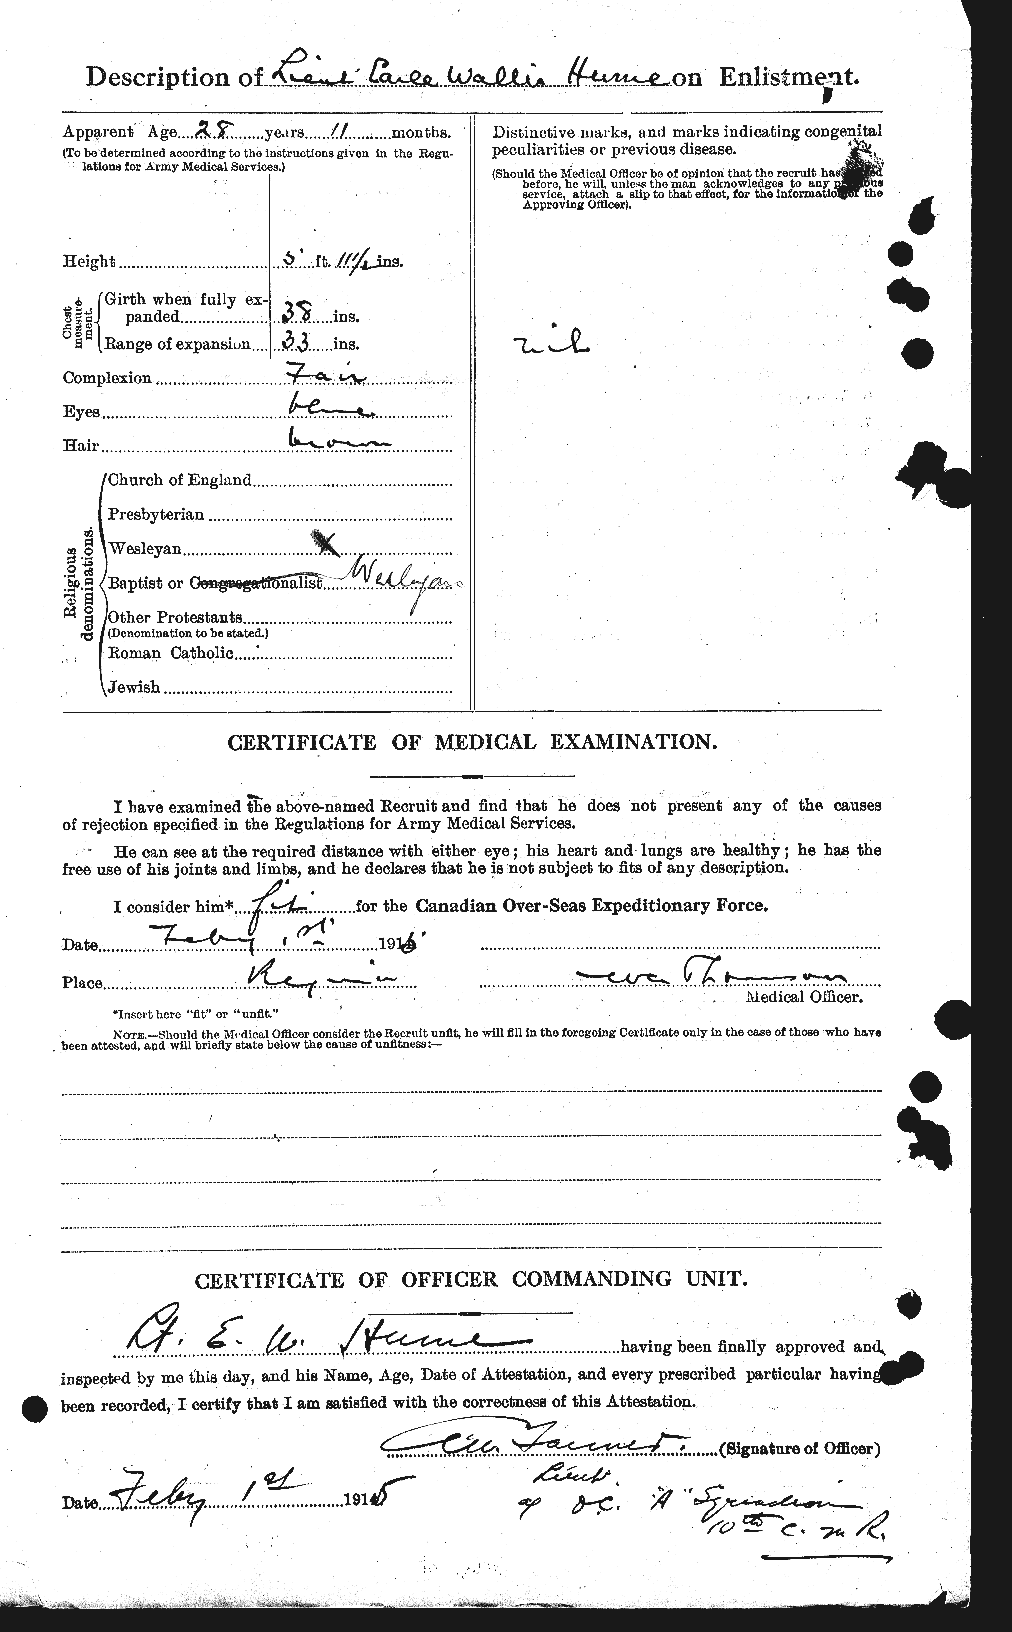 Dossiers du Personnel de la Première Guerre mondiale - CEC 407223b